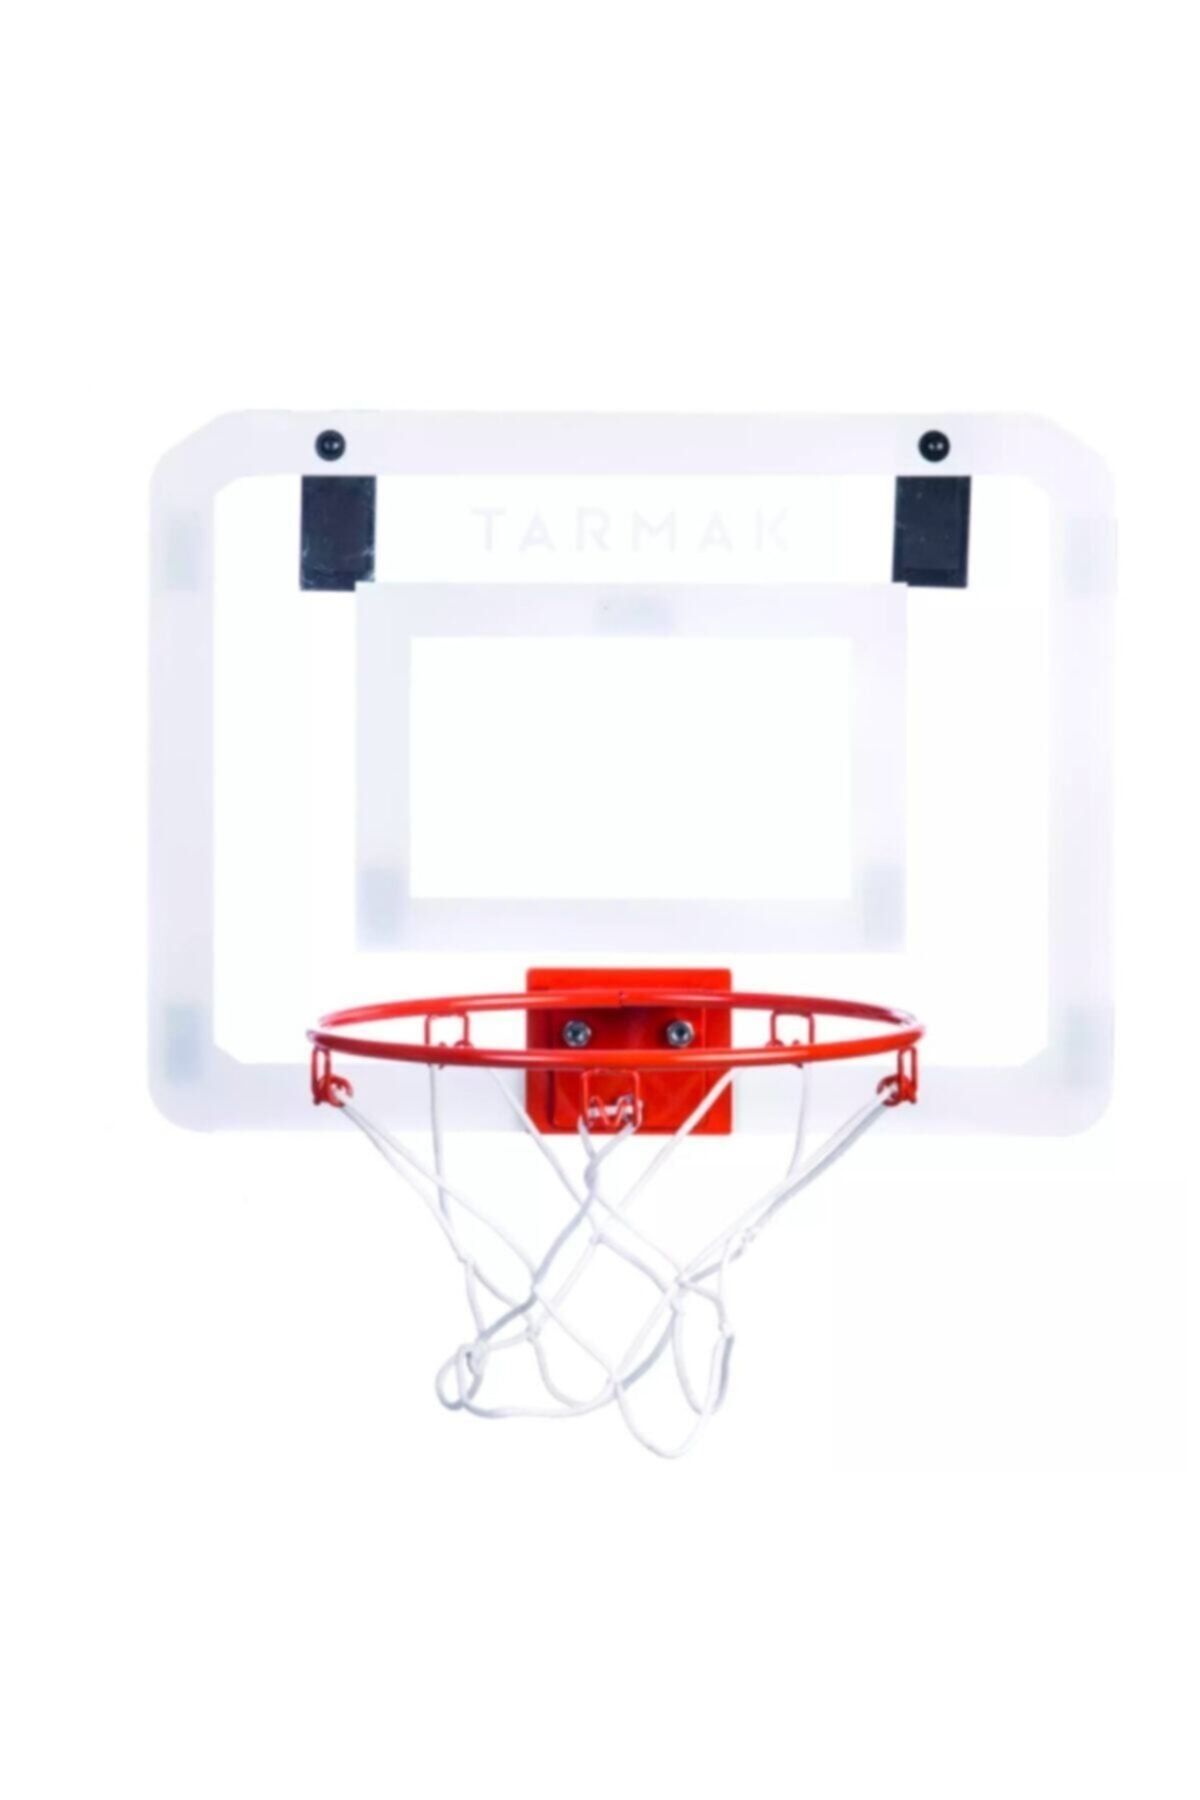 Decathlon - Basketbol Potası Mını B Deluxe Duvara Yapıştırılabilen Veya Sabitlenen